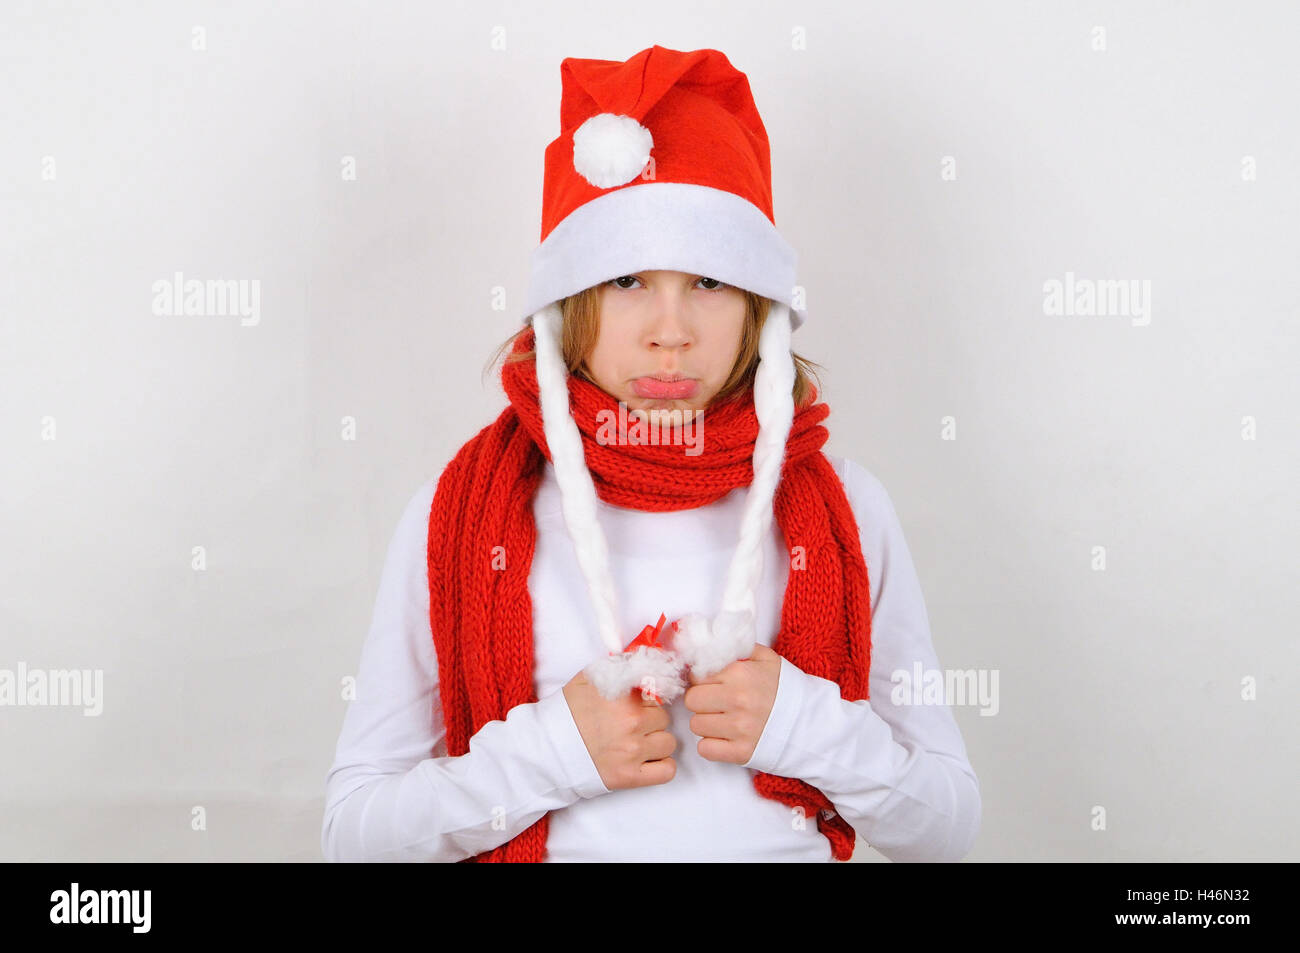 Ragazza, Santa's hat, visualizza fotocamera, provocatoriamente, Natale, inverno, Santa, Santa's hat, una persona, bambino, sciarpa rossa, gesto, offende, tengono il broncio, rivestimento, Foto Stock